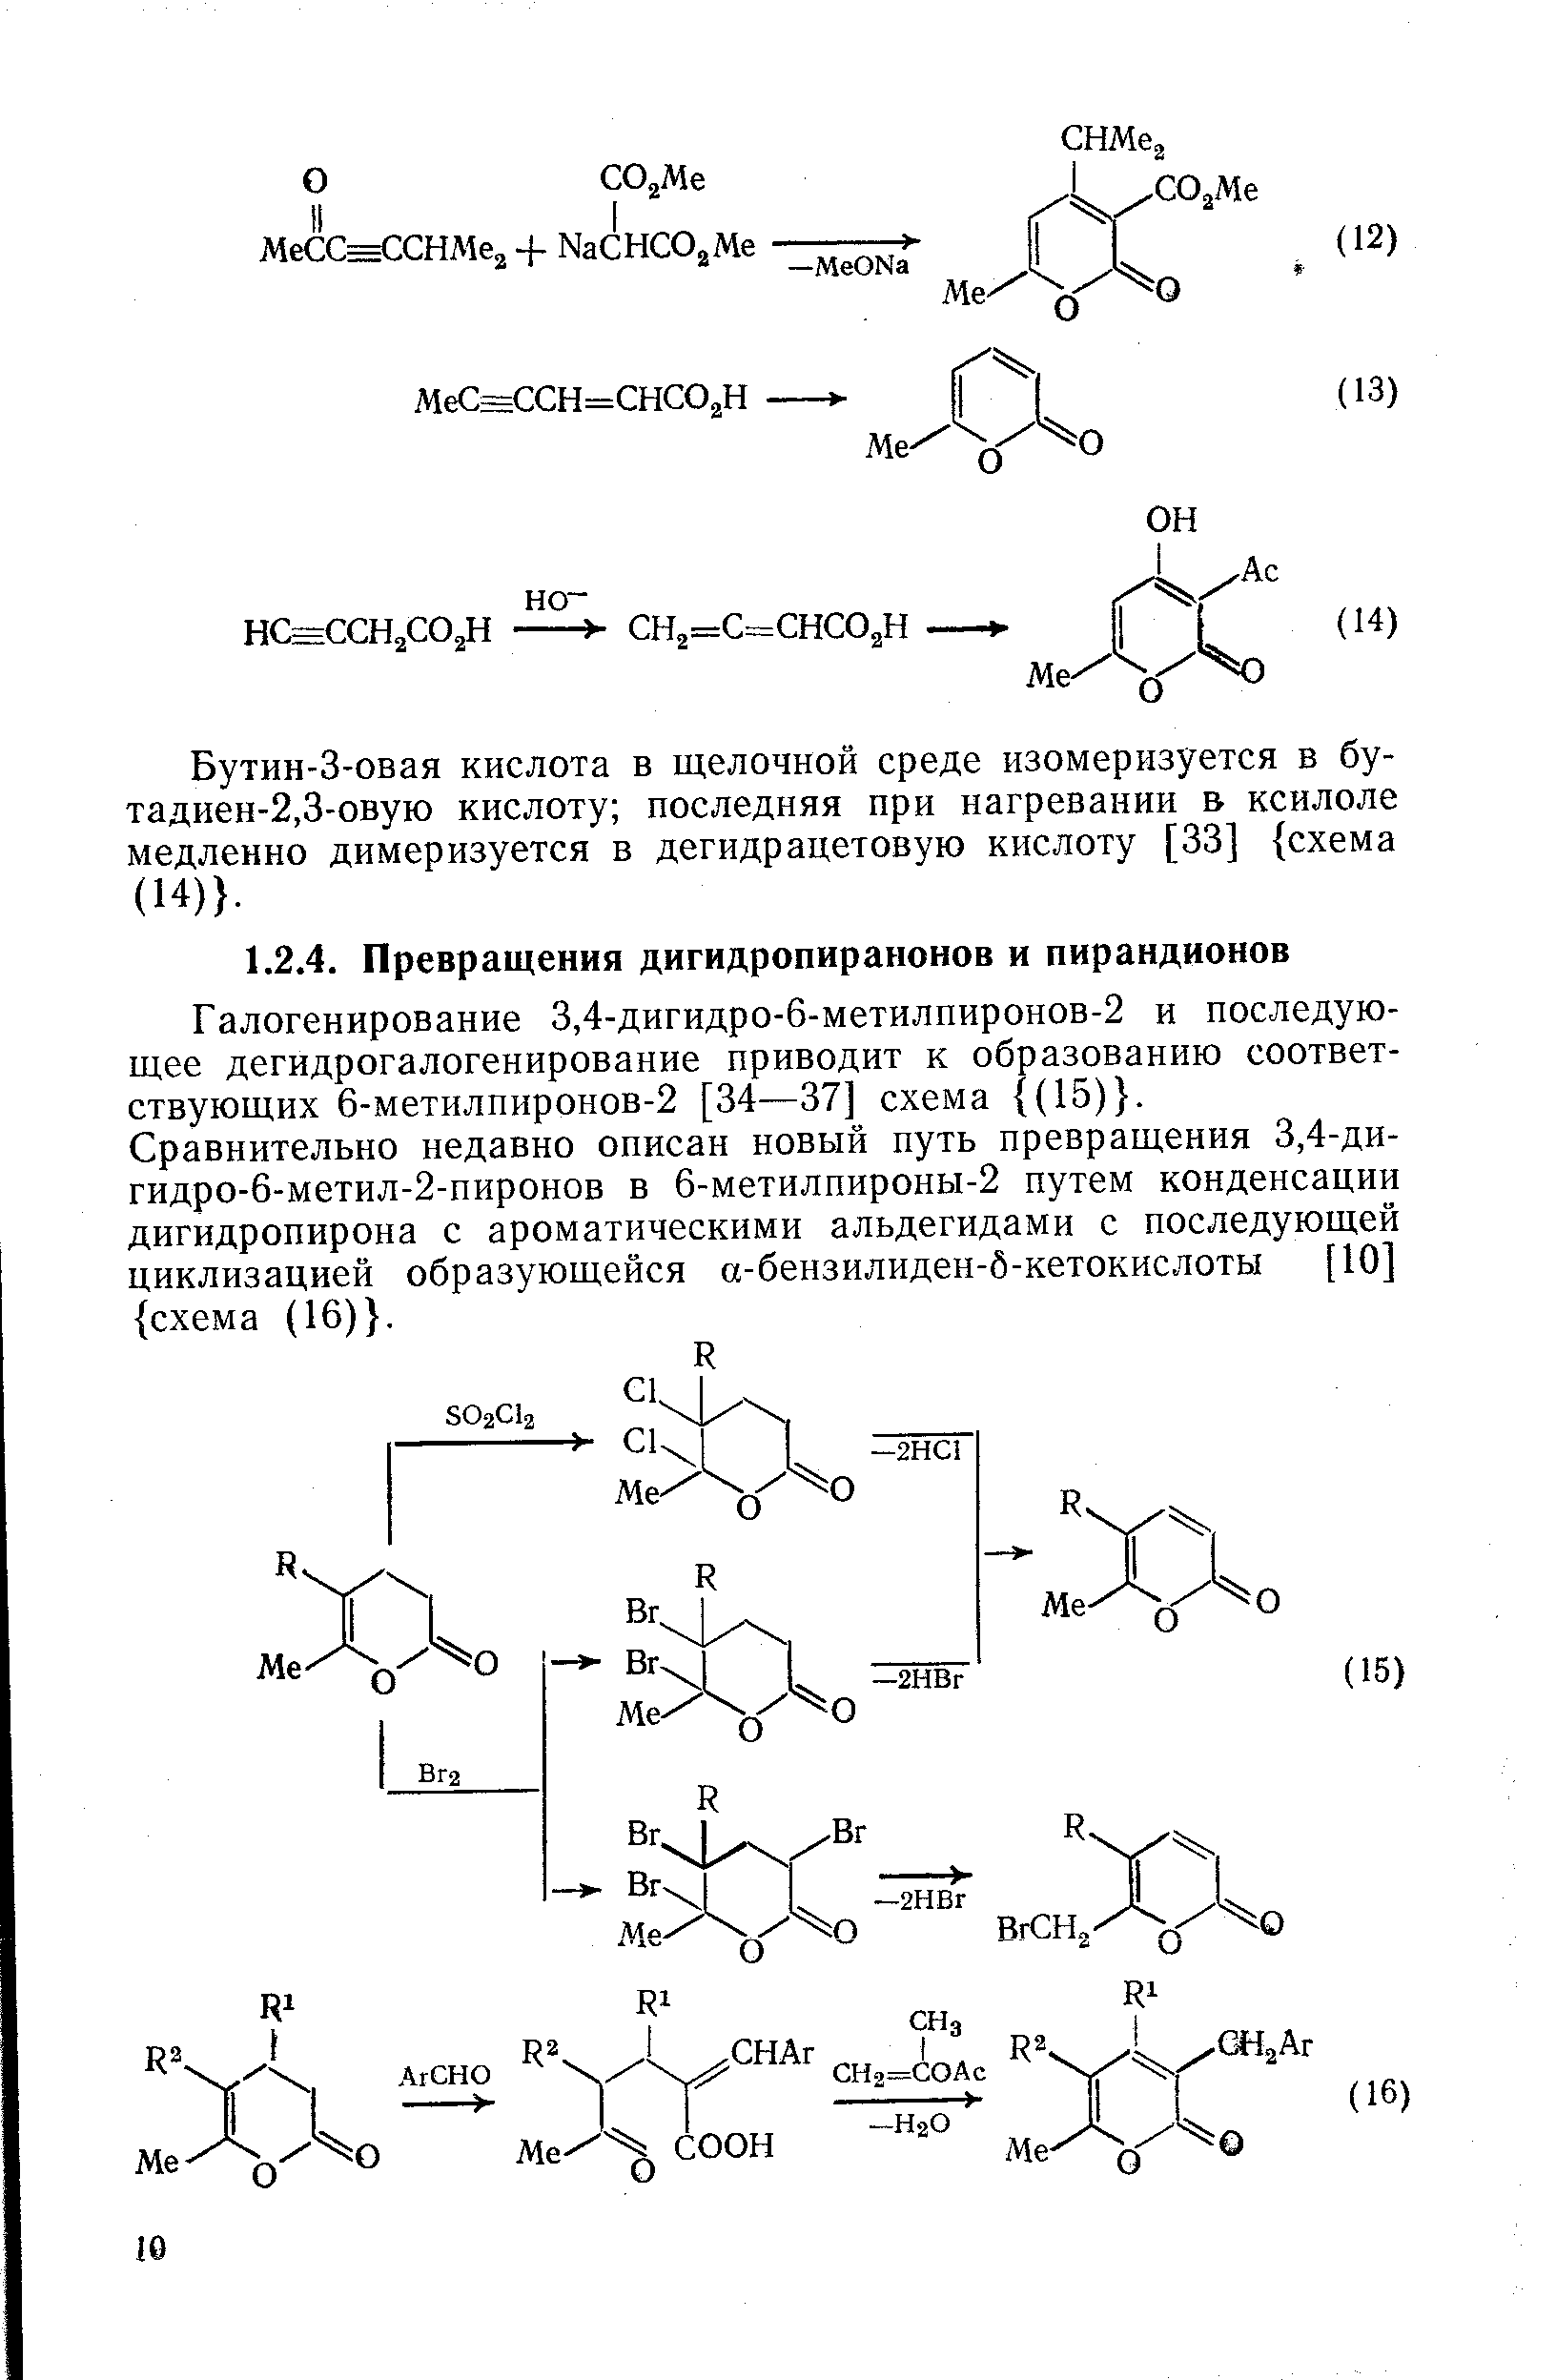 Галогенирование 3,4-дигидро-6-метилпиронов-2 и последующее дегидрогалогенирование приводит к образованию соответствующих 6-метилпиронов-2 [34—37] схема (15) . Сравнительно недавно описан новый путь превращения 3,4-ди-гидро-6-метил-2-пиронов в 6-метилпироны-2 путем конденсации дигидропирона с ароматическими альдегидами с последующей циклизацией образующейся а-бензилиден-б-кетокислоты [10] схема (16) .